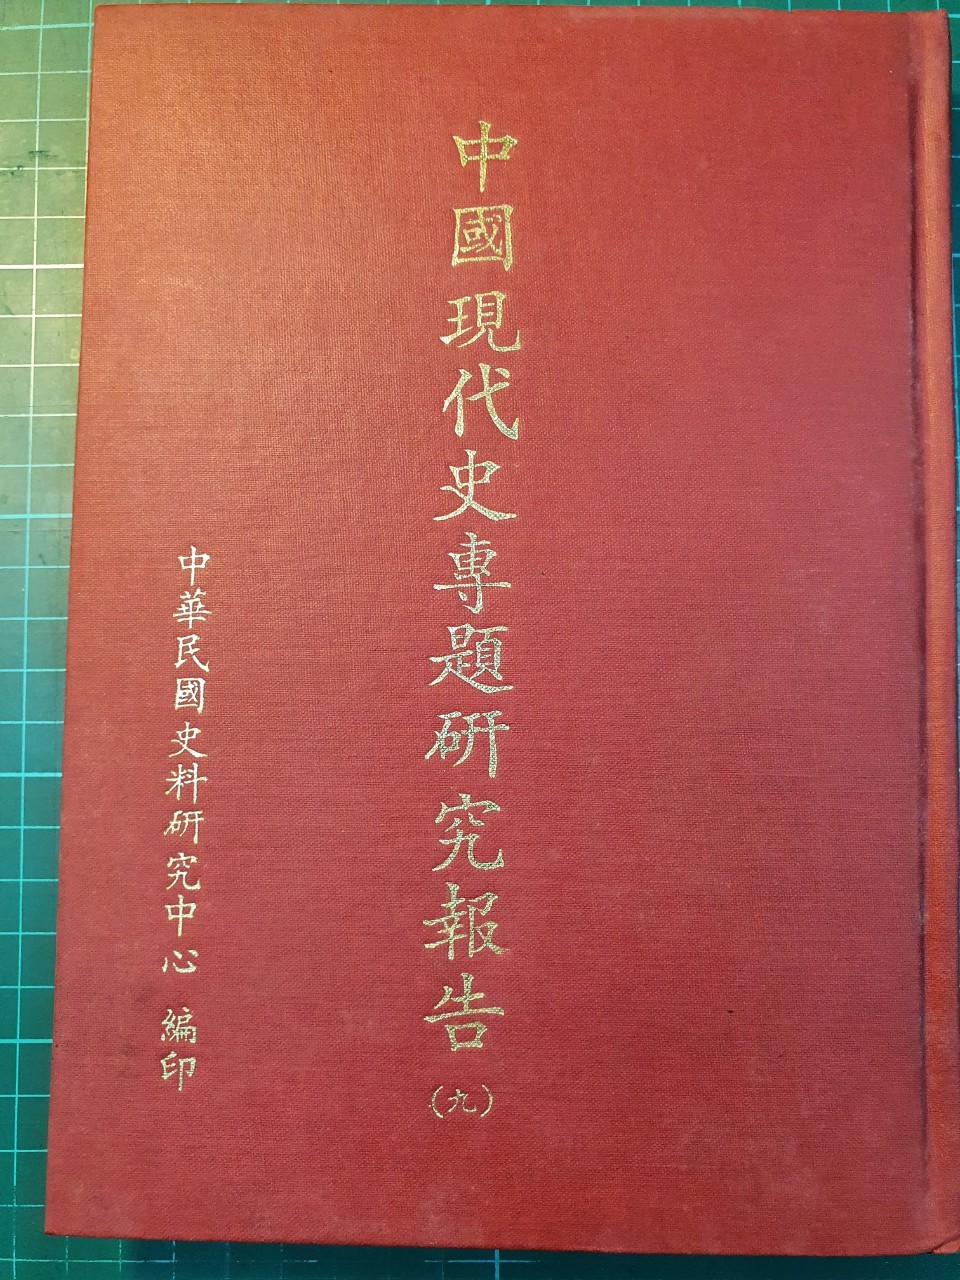 中國現代史專題研究報告第九輯